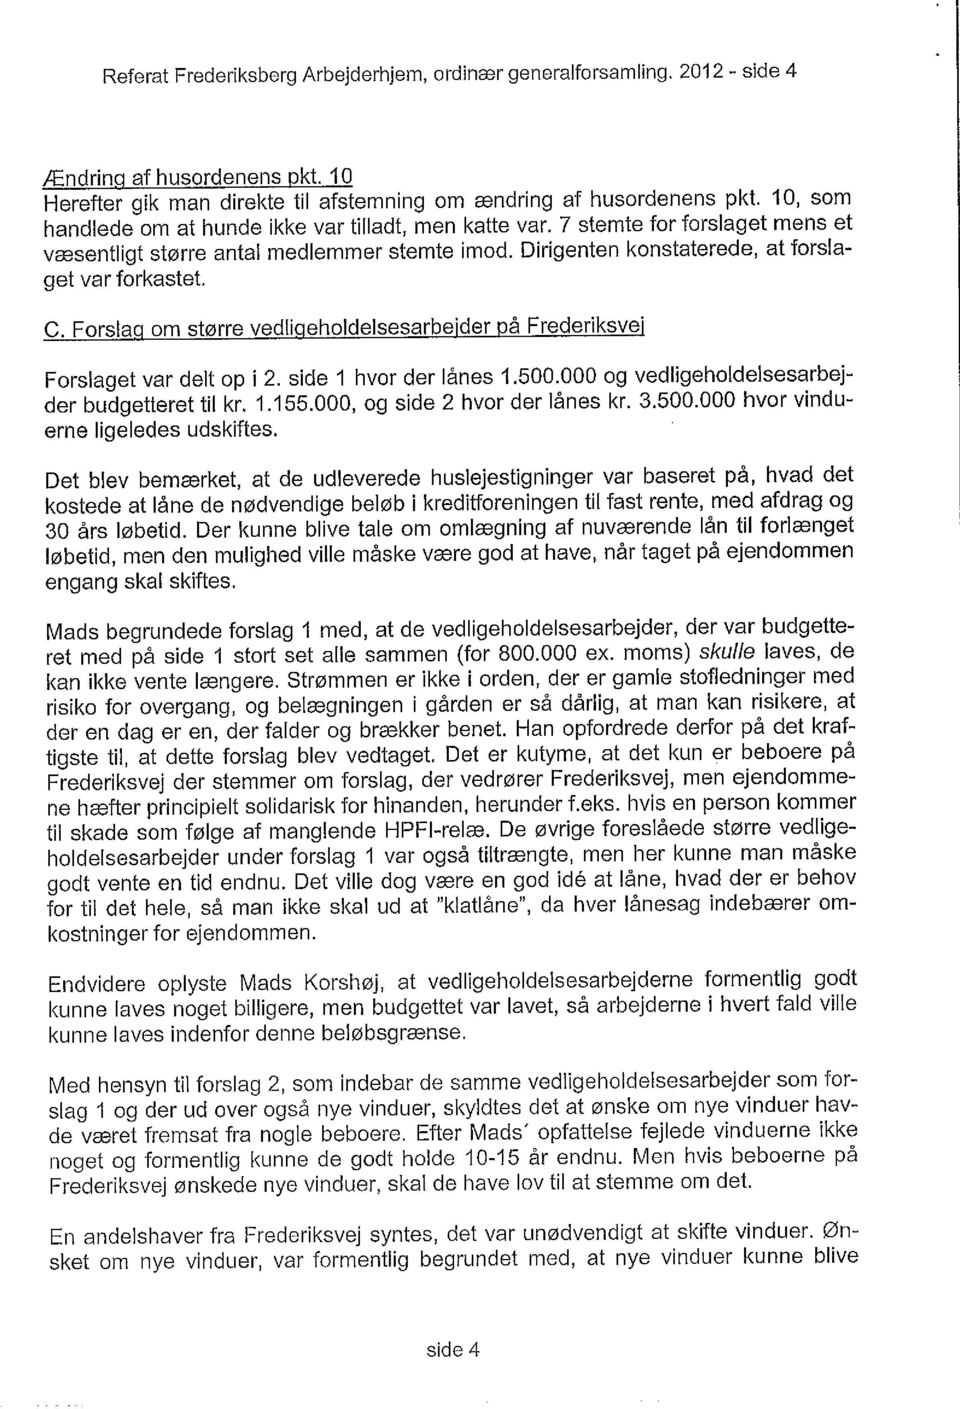 Forslaq om større vedligeholdelsesarbejder på Frederiksvej Forslaget var delt op i 2. side 1 hvor der lånes 1.500.000 og vedligeholdelsesarbejder budgetteret tilkr. 1.155.